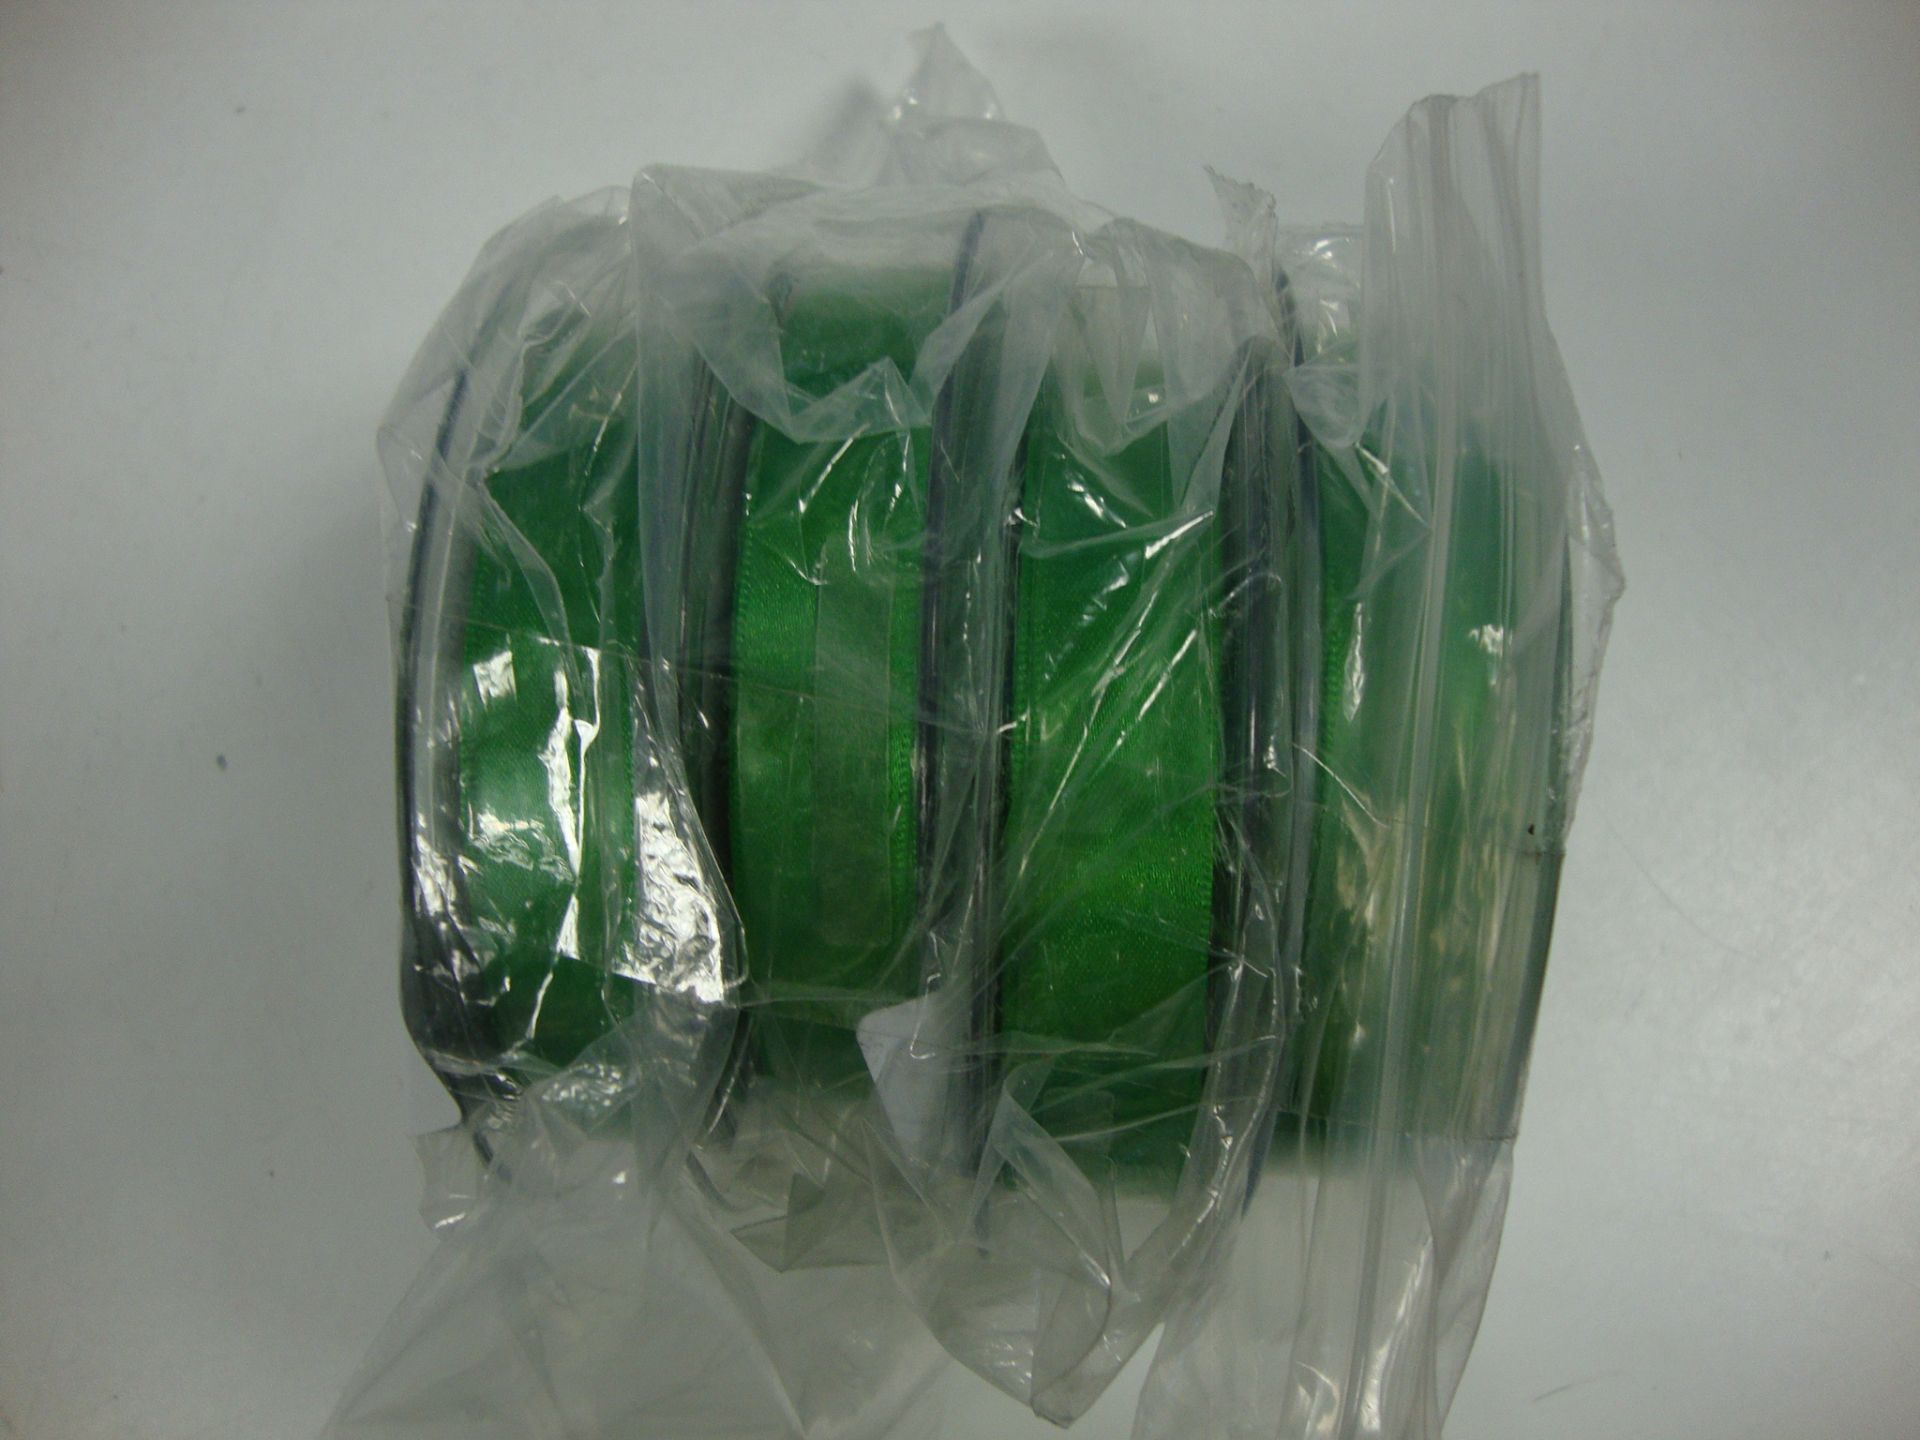 4x Essentials Green Ribbon 20m Grade A - Image 2 of 3